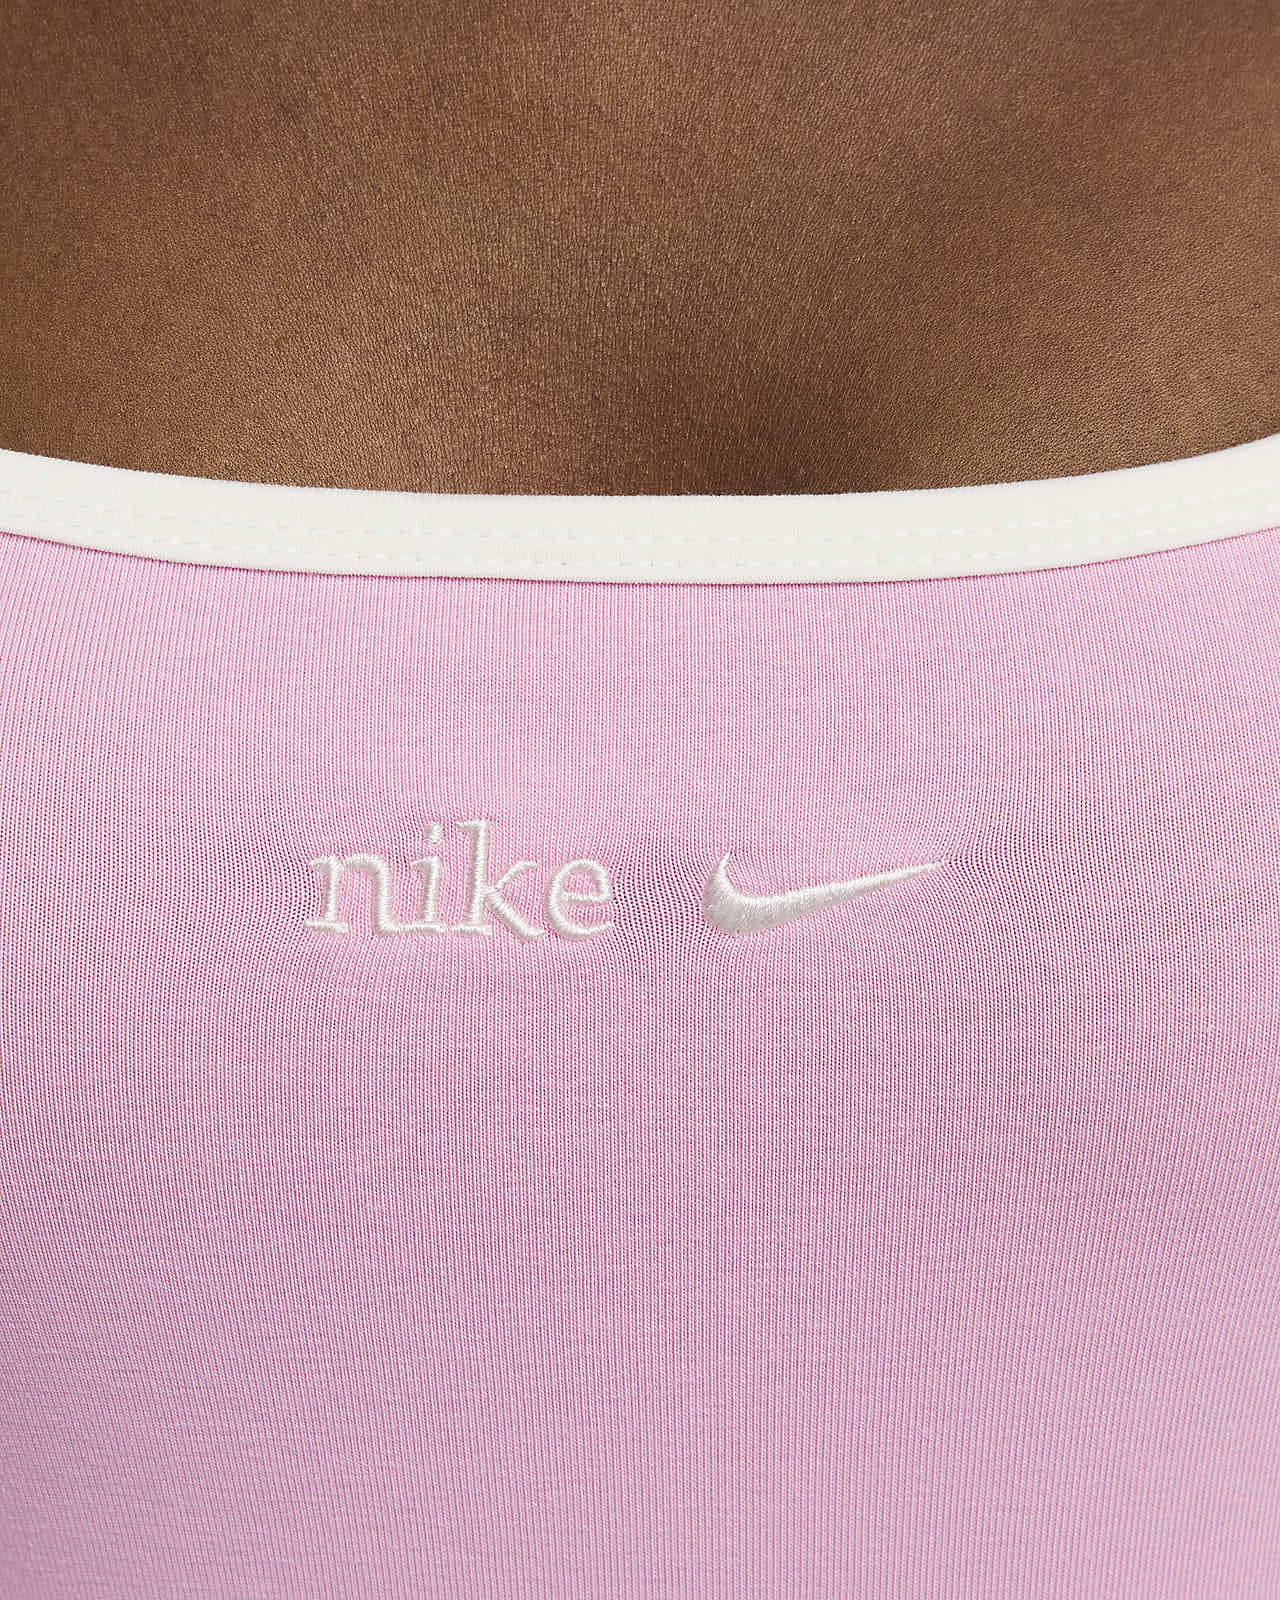 Nike Sportswear Women's Square-Neck Long-Sleeve Top. Nike CA